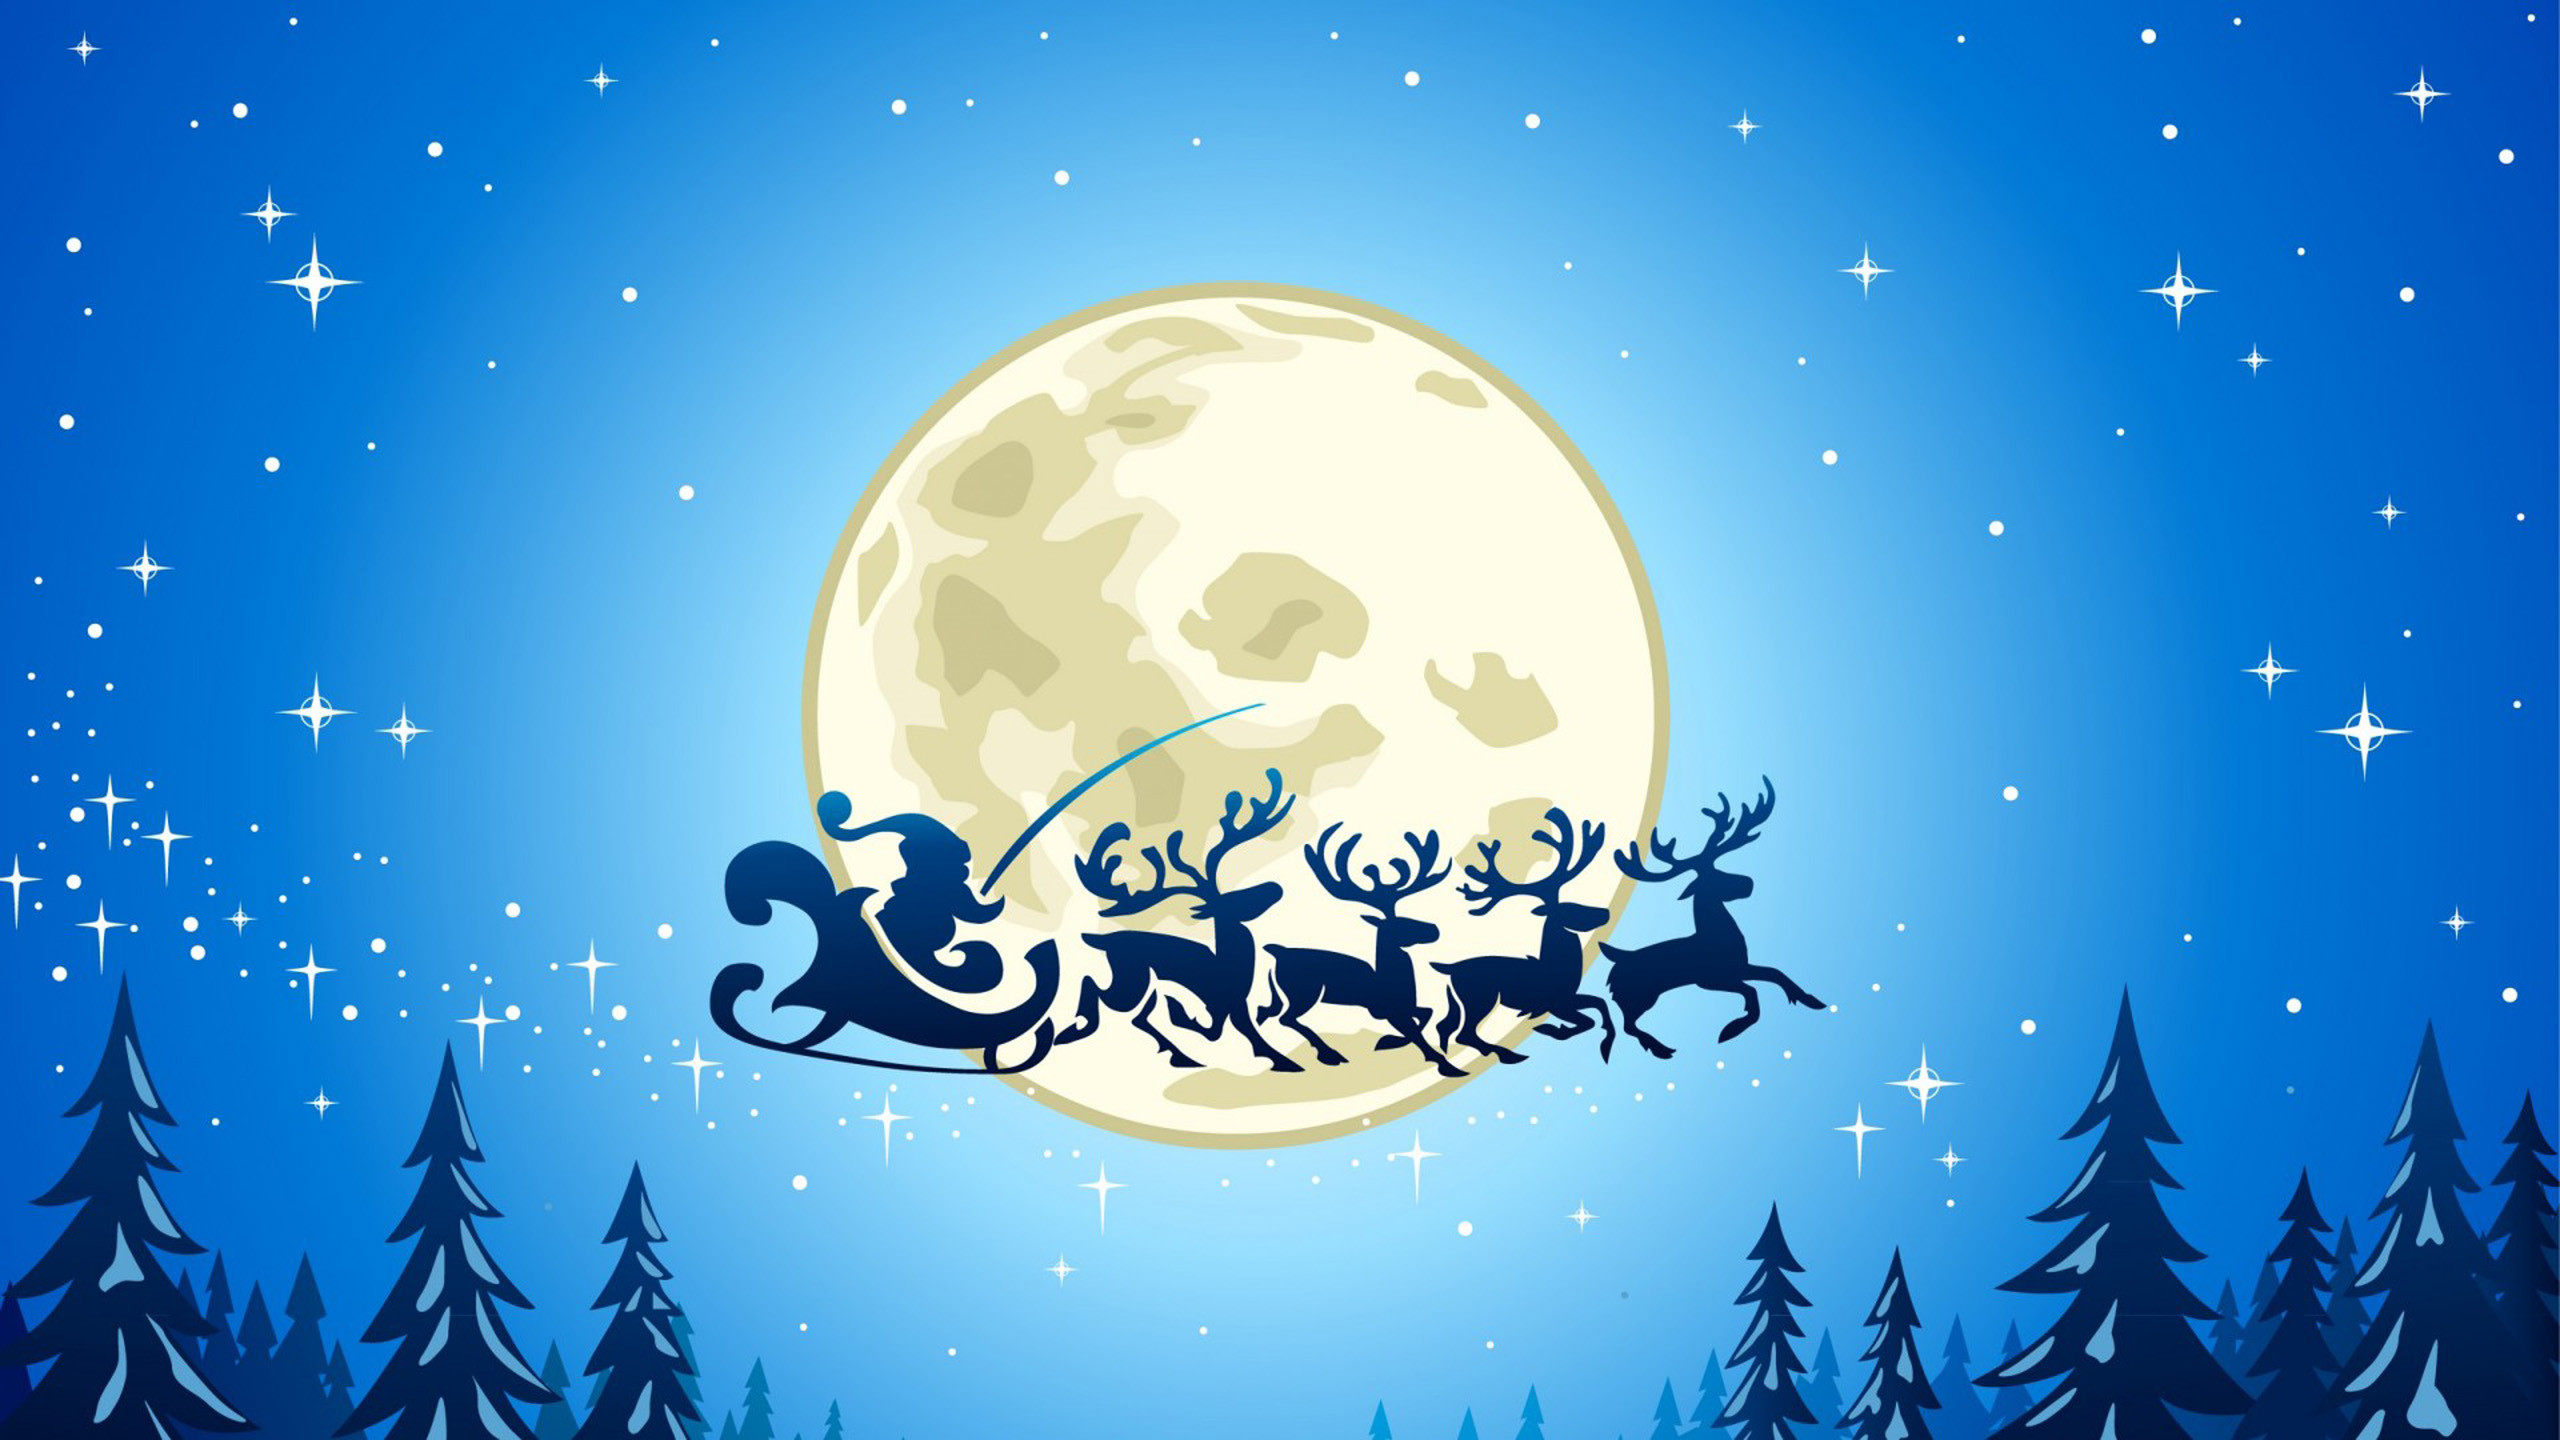 christmas theme wallpaper,sky,christmas eve,illustration,moon,tree